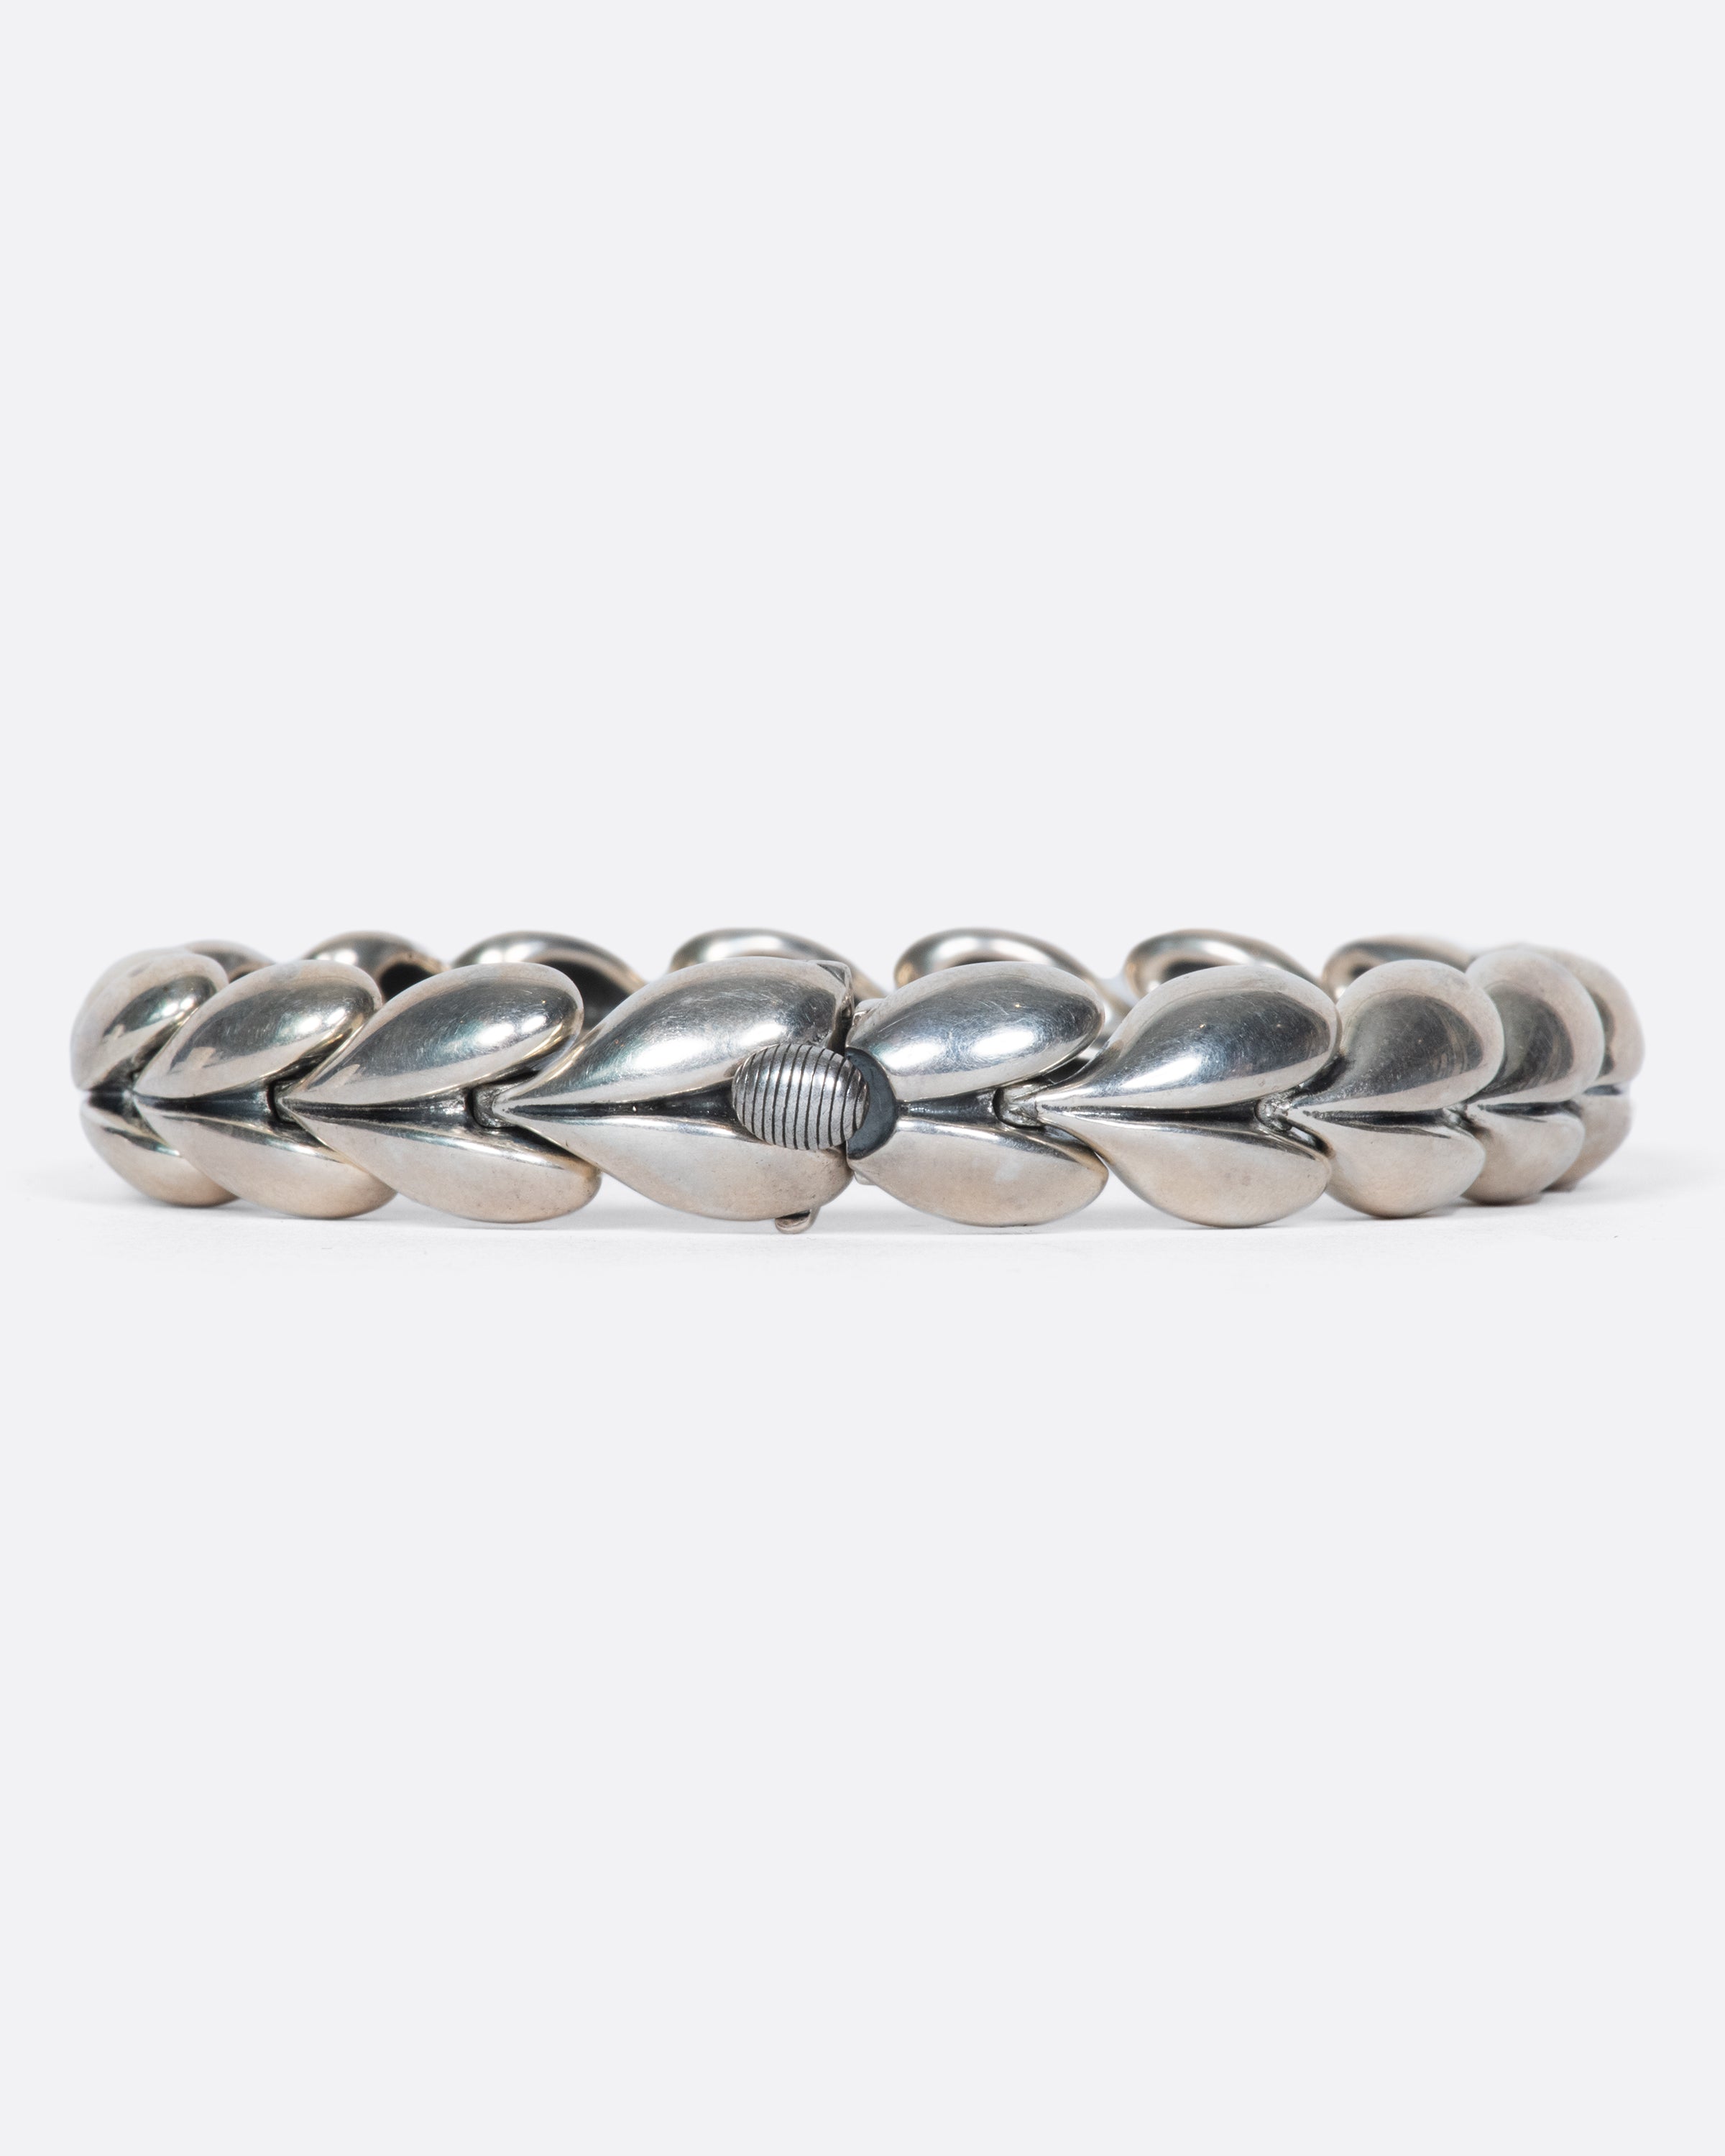 Vintage Sterling Silver Puffy Heart Link Bracelet – Love Adorned